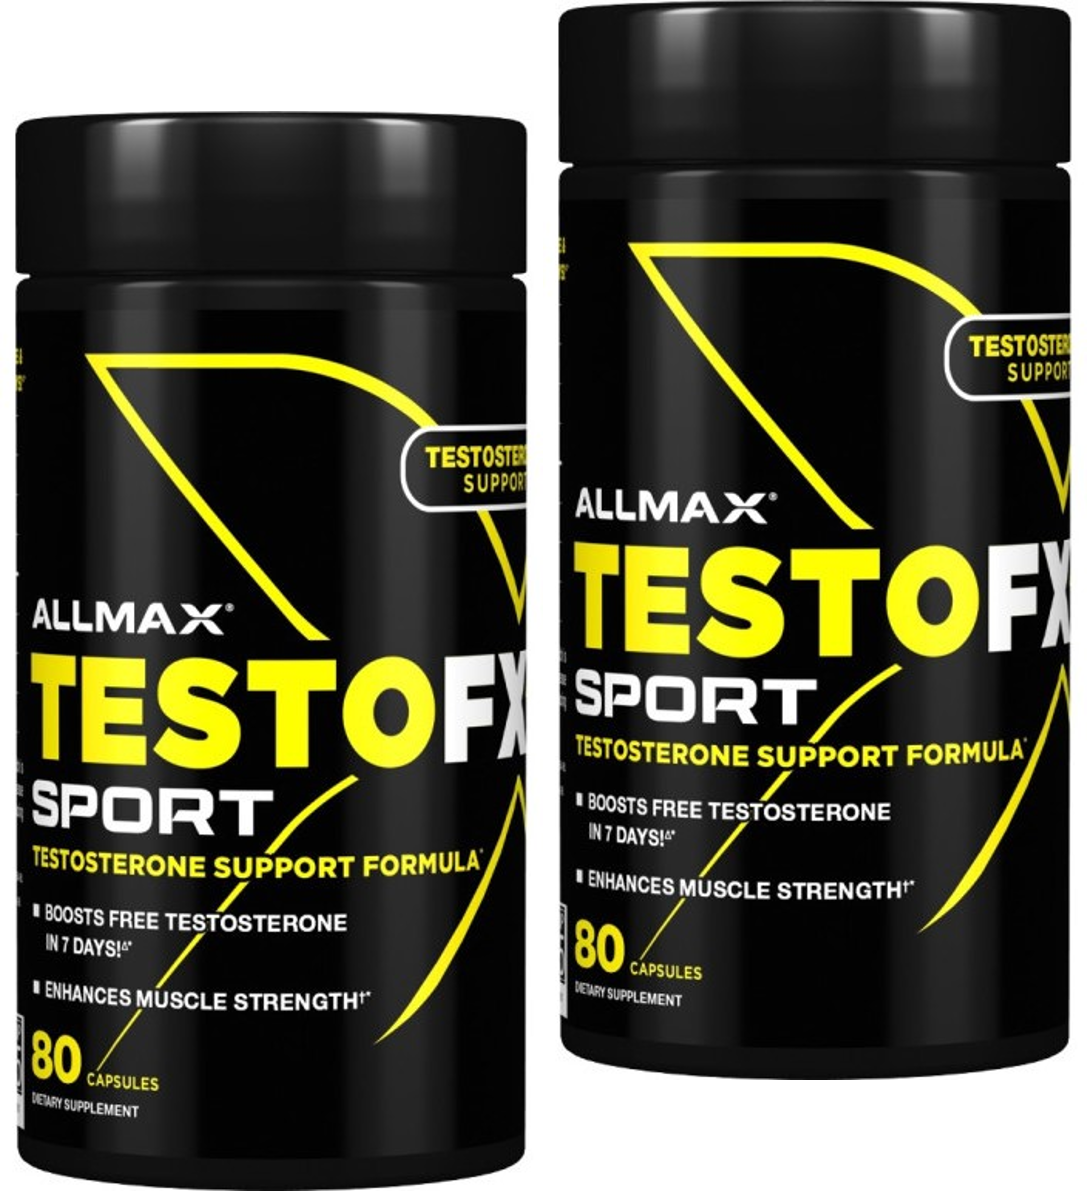 Allmax TestoFX Sport, 2 x 80 Capsules